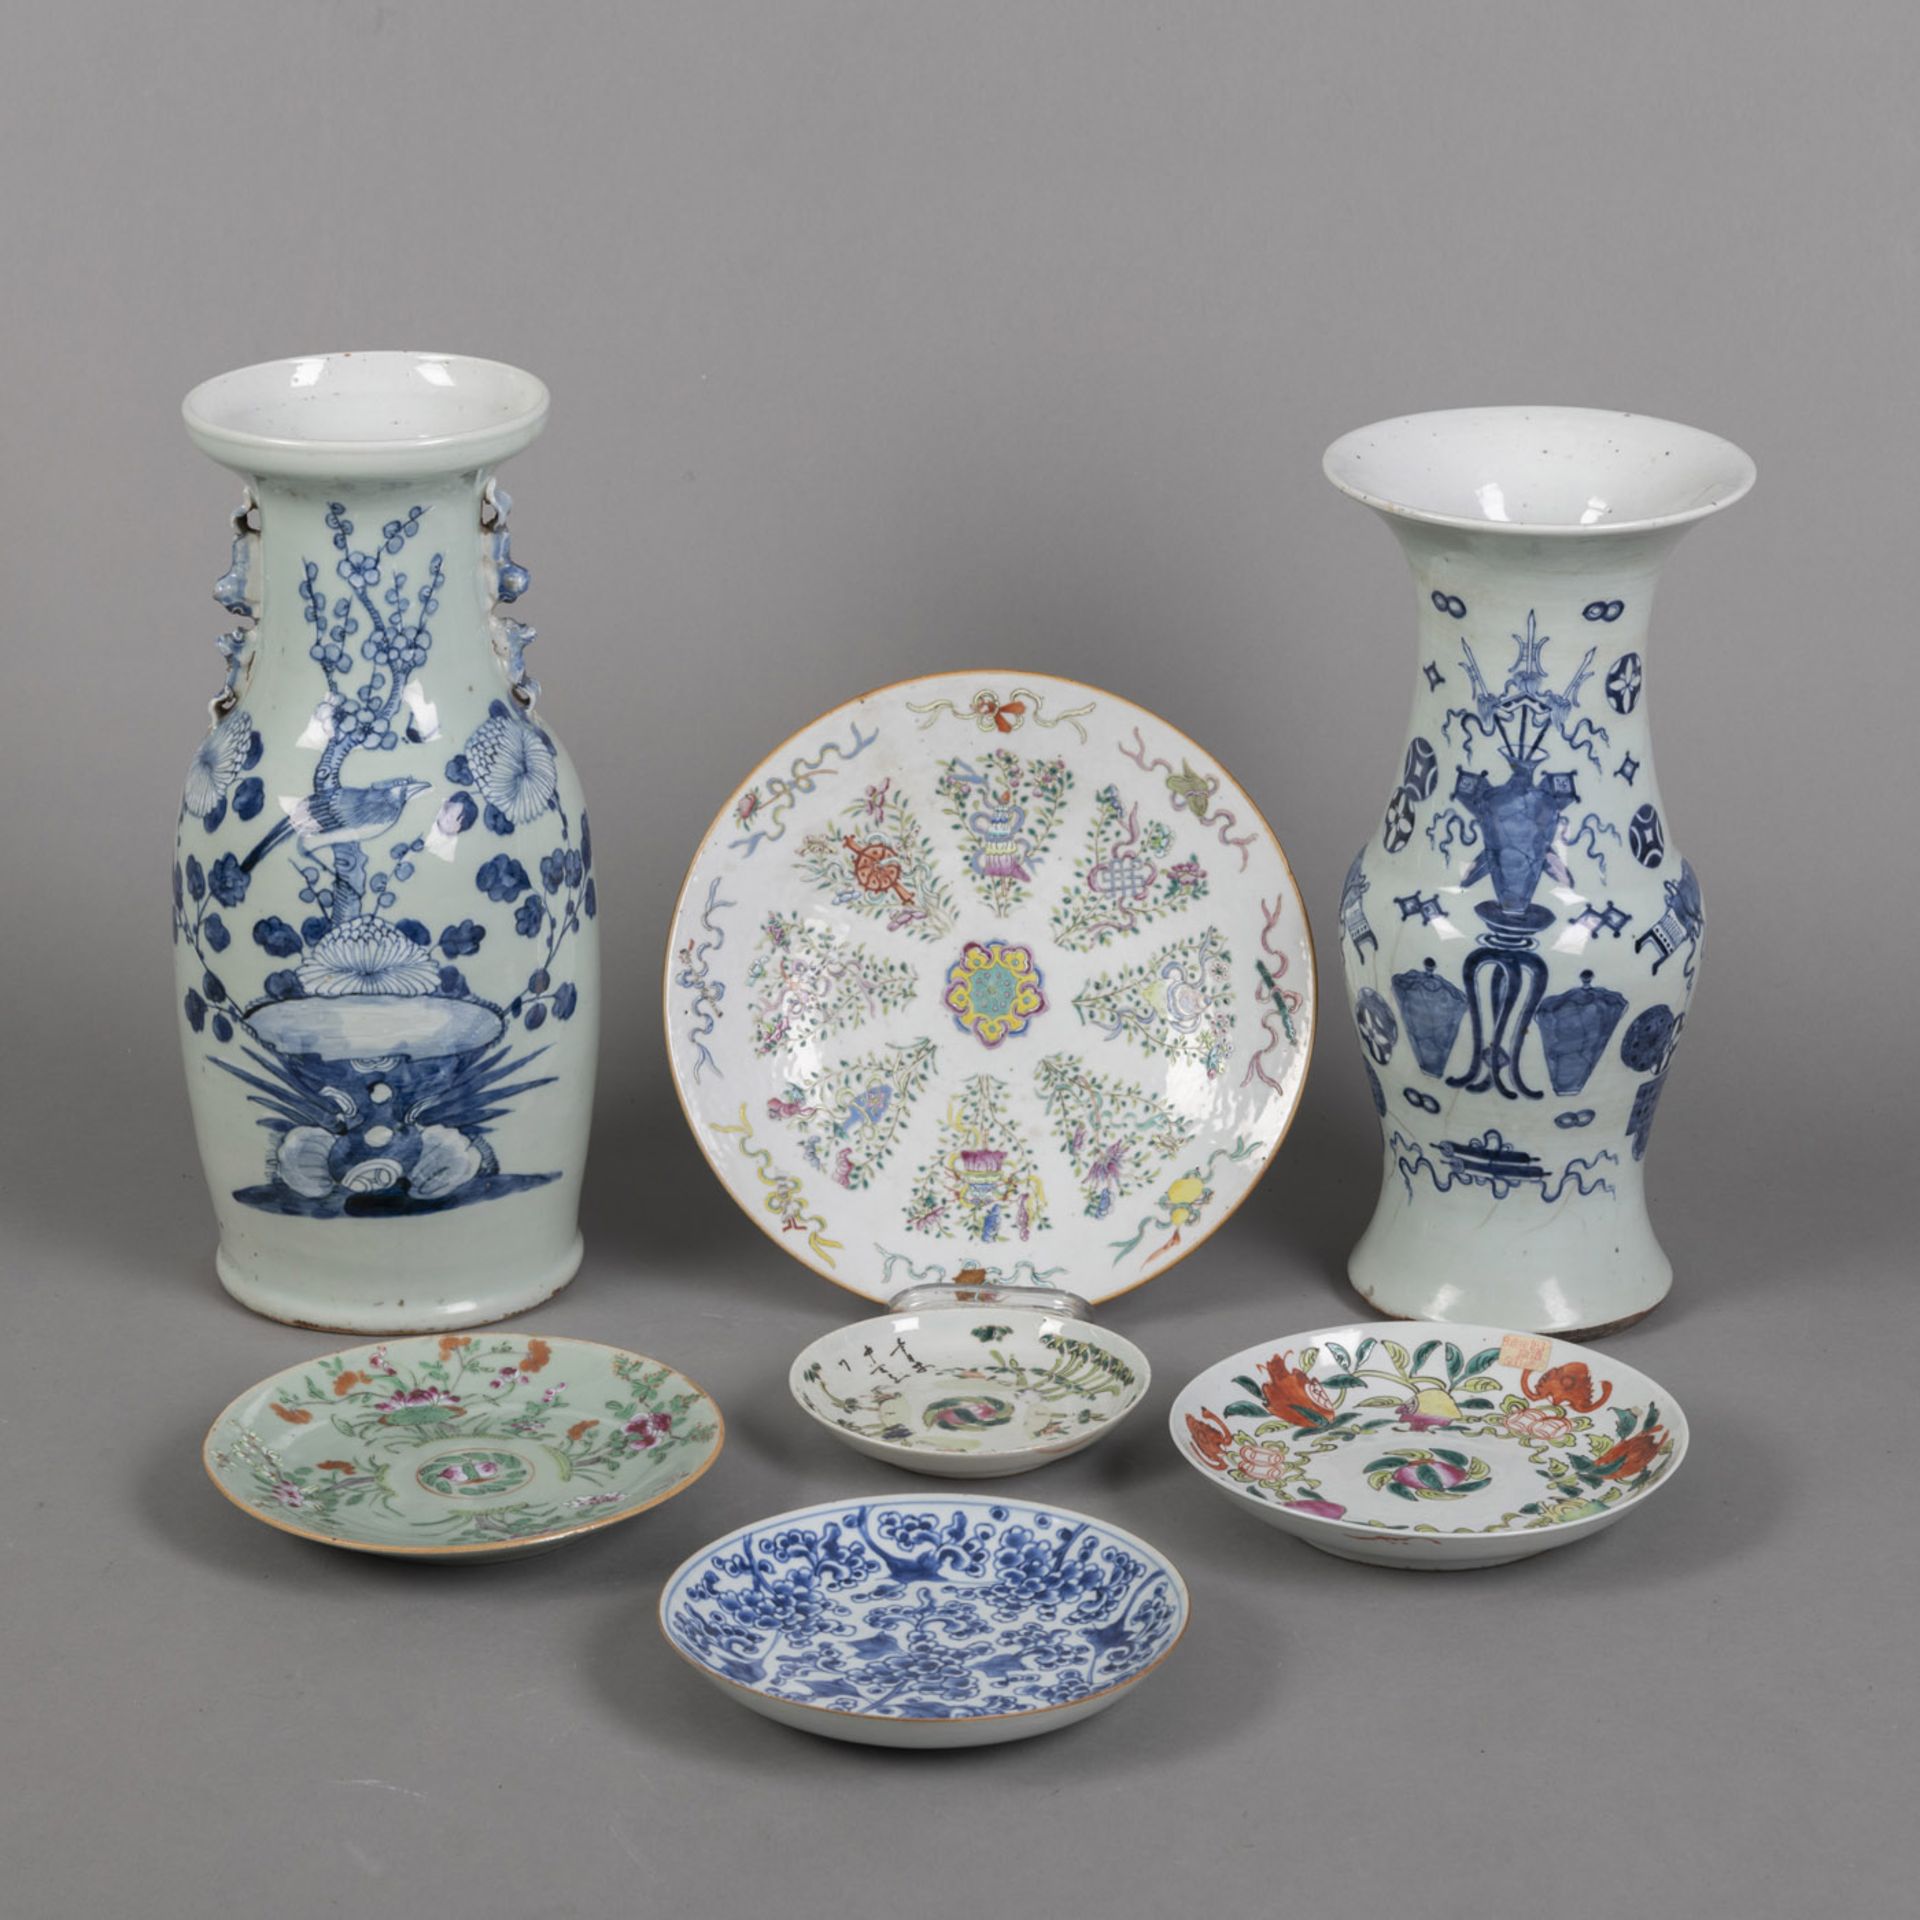 Fünf Teller und zwei Vasen aus Porzellan mit polychromem Schätzen- und Blumendekor